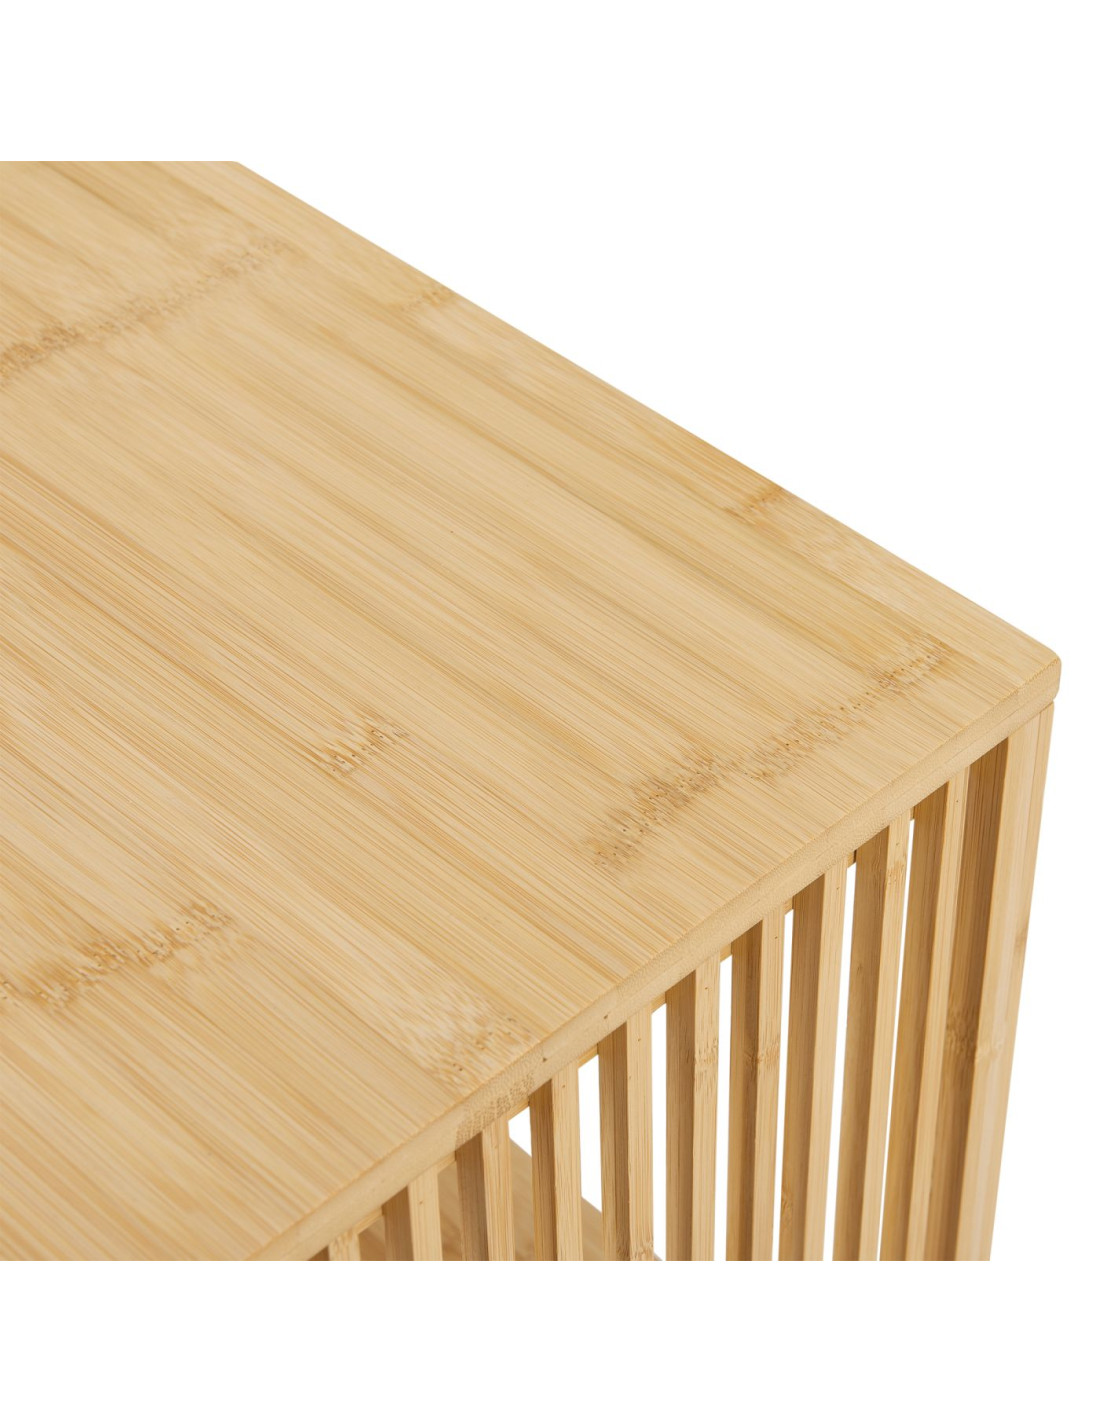 Table de lit bambou